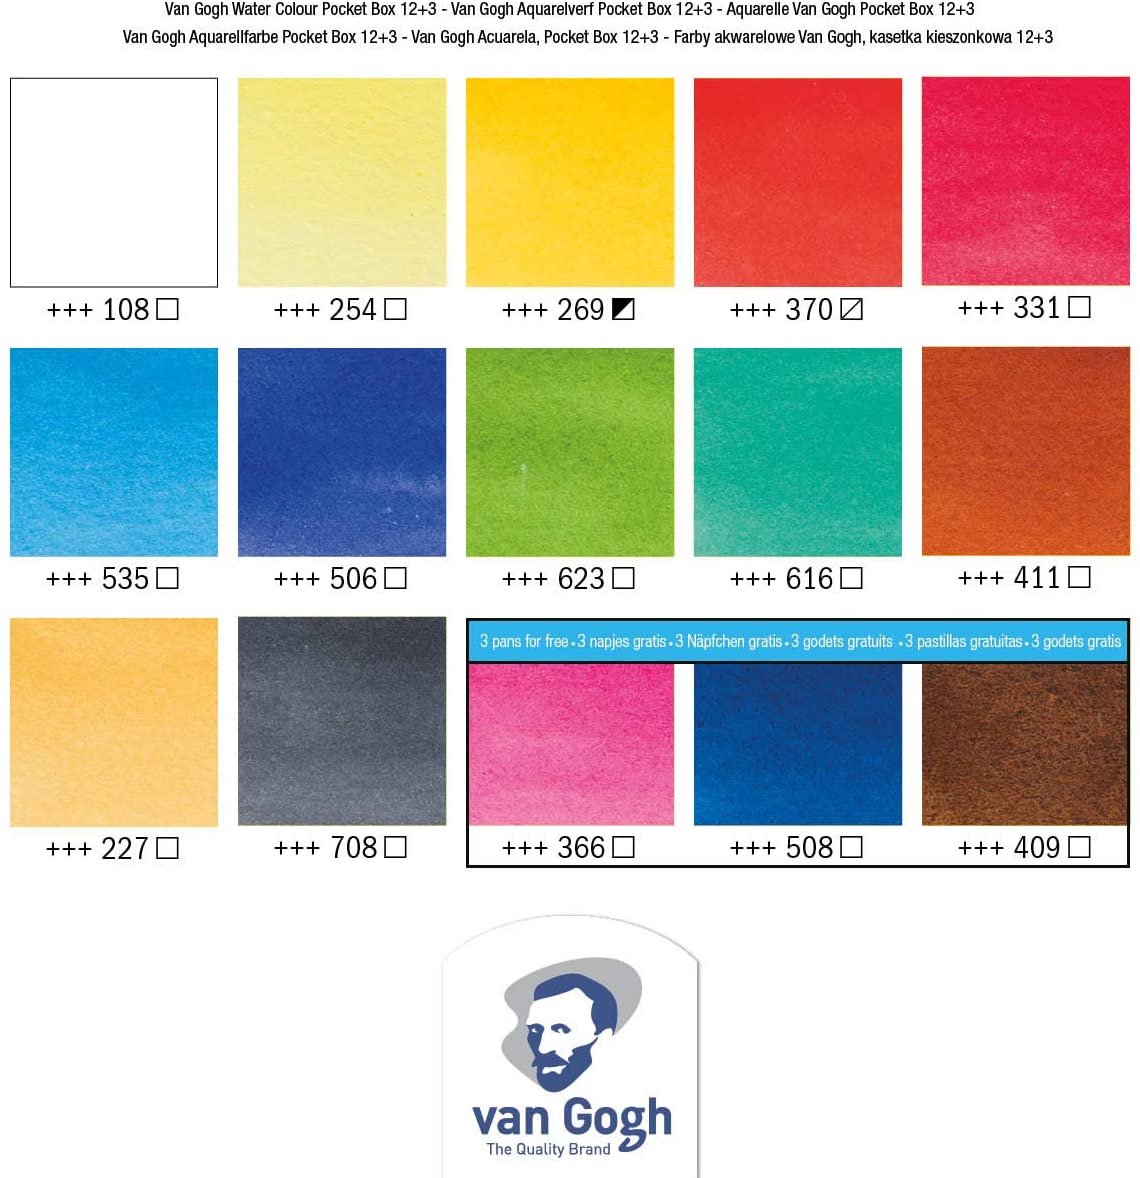 Van Gogh Watercolor Pocket Box - Assorted Colors, Set of 18 Half Pans